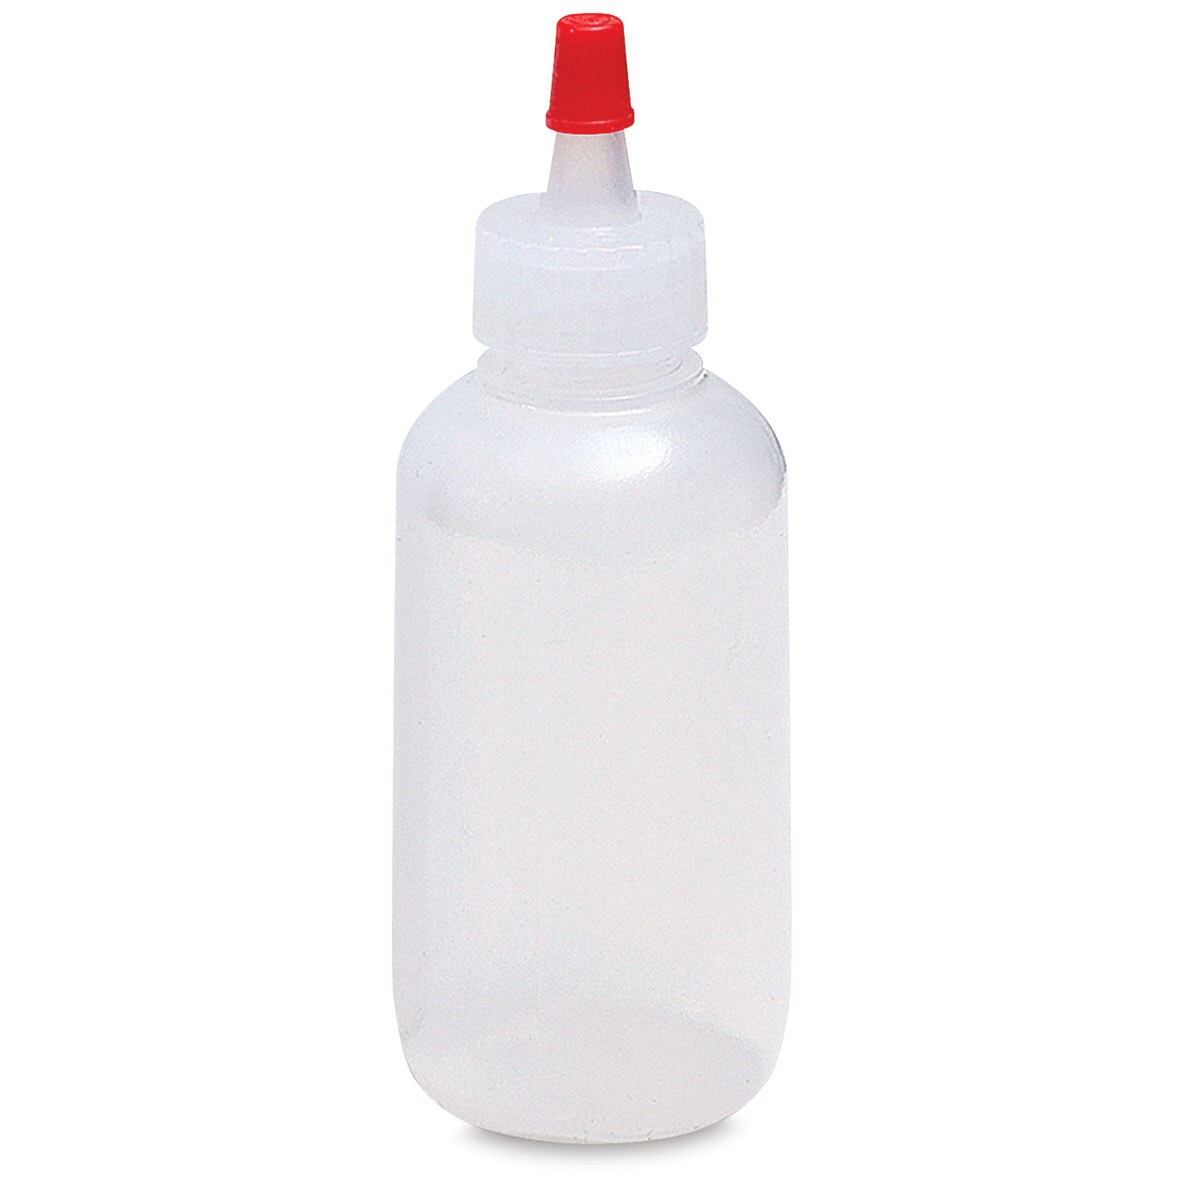 Richeson Plastic Squeeze Bottle - 2 oz